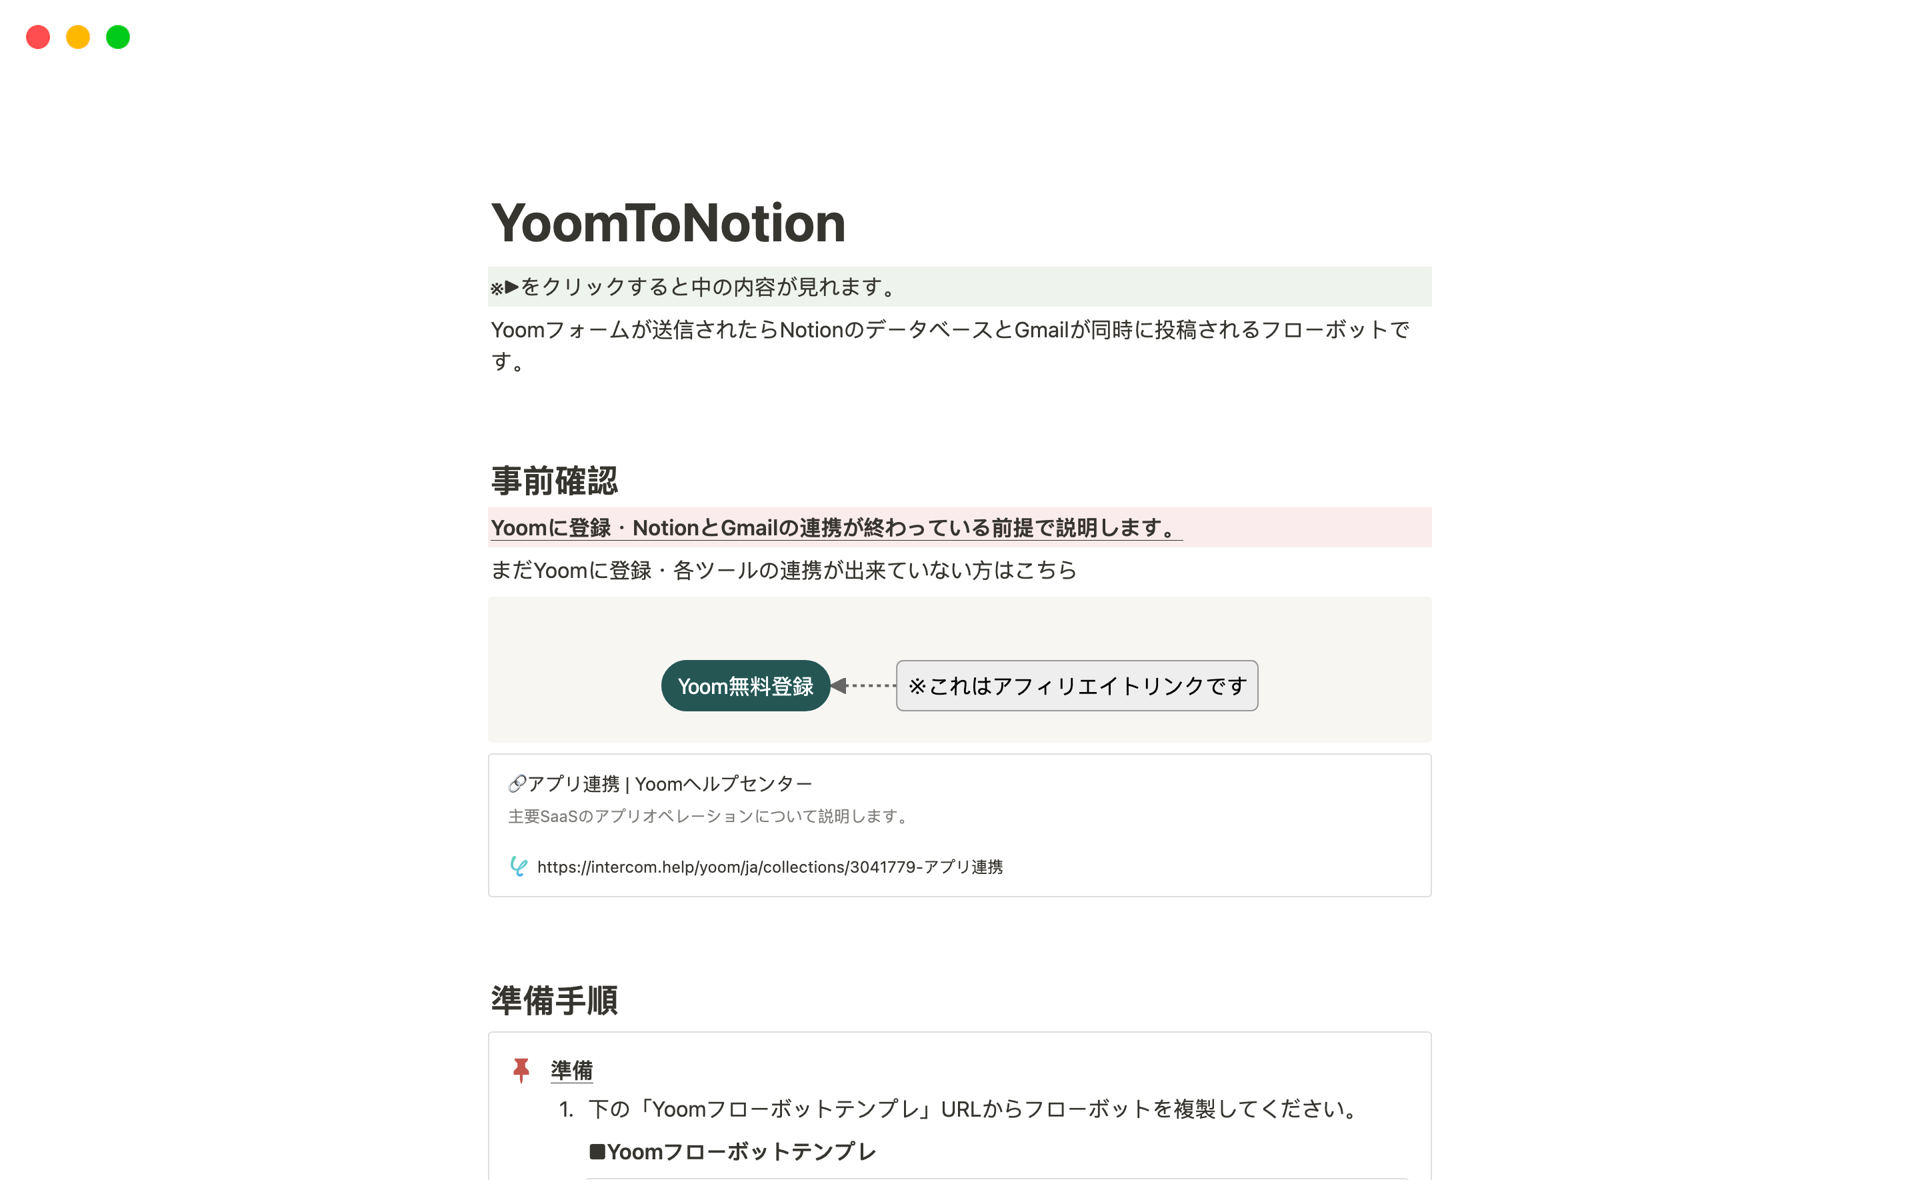 Aperçu du modèle de YoomToNotion